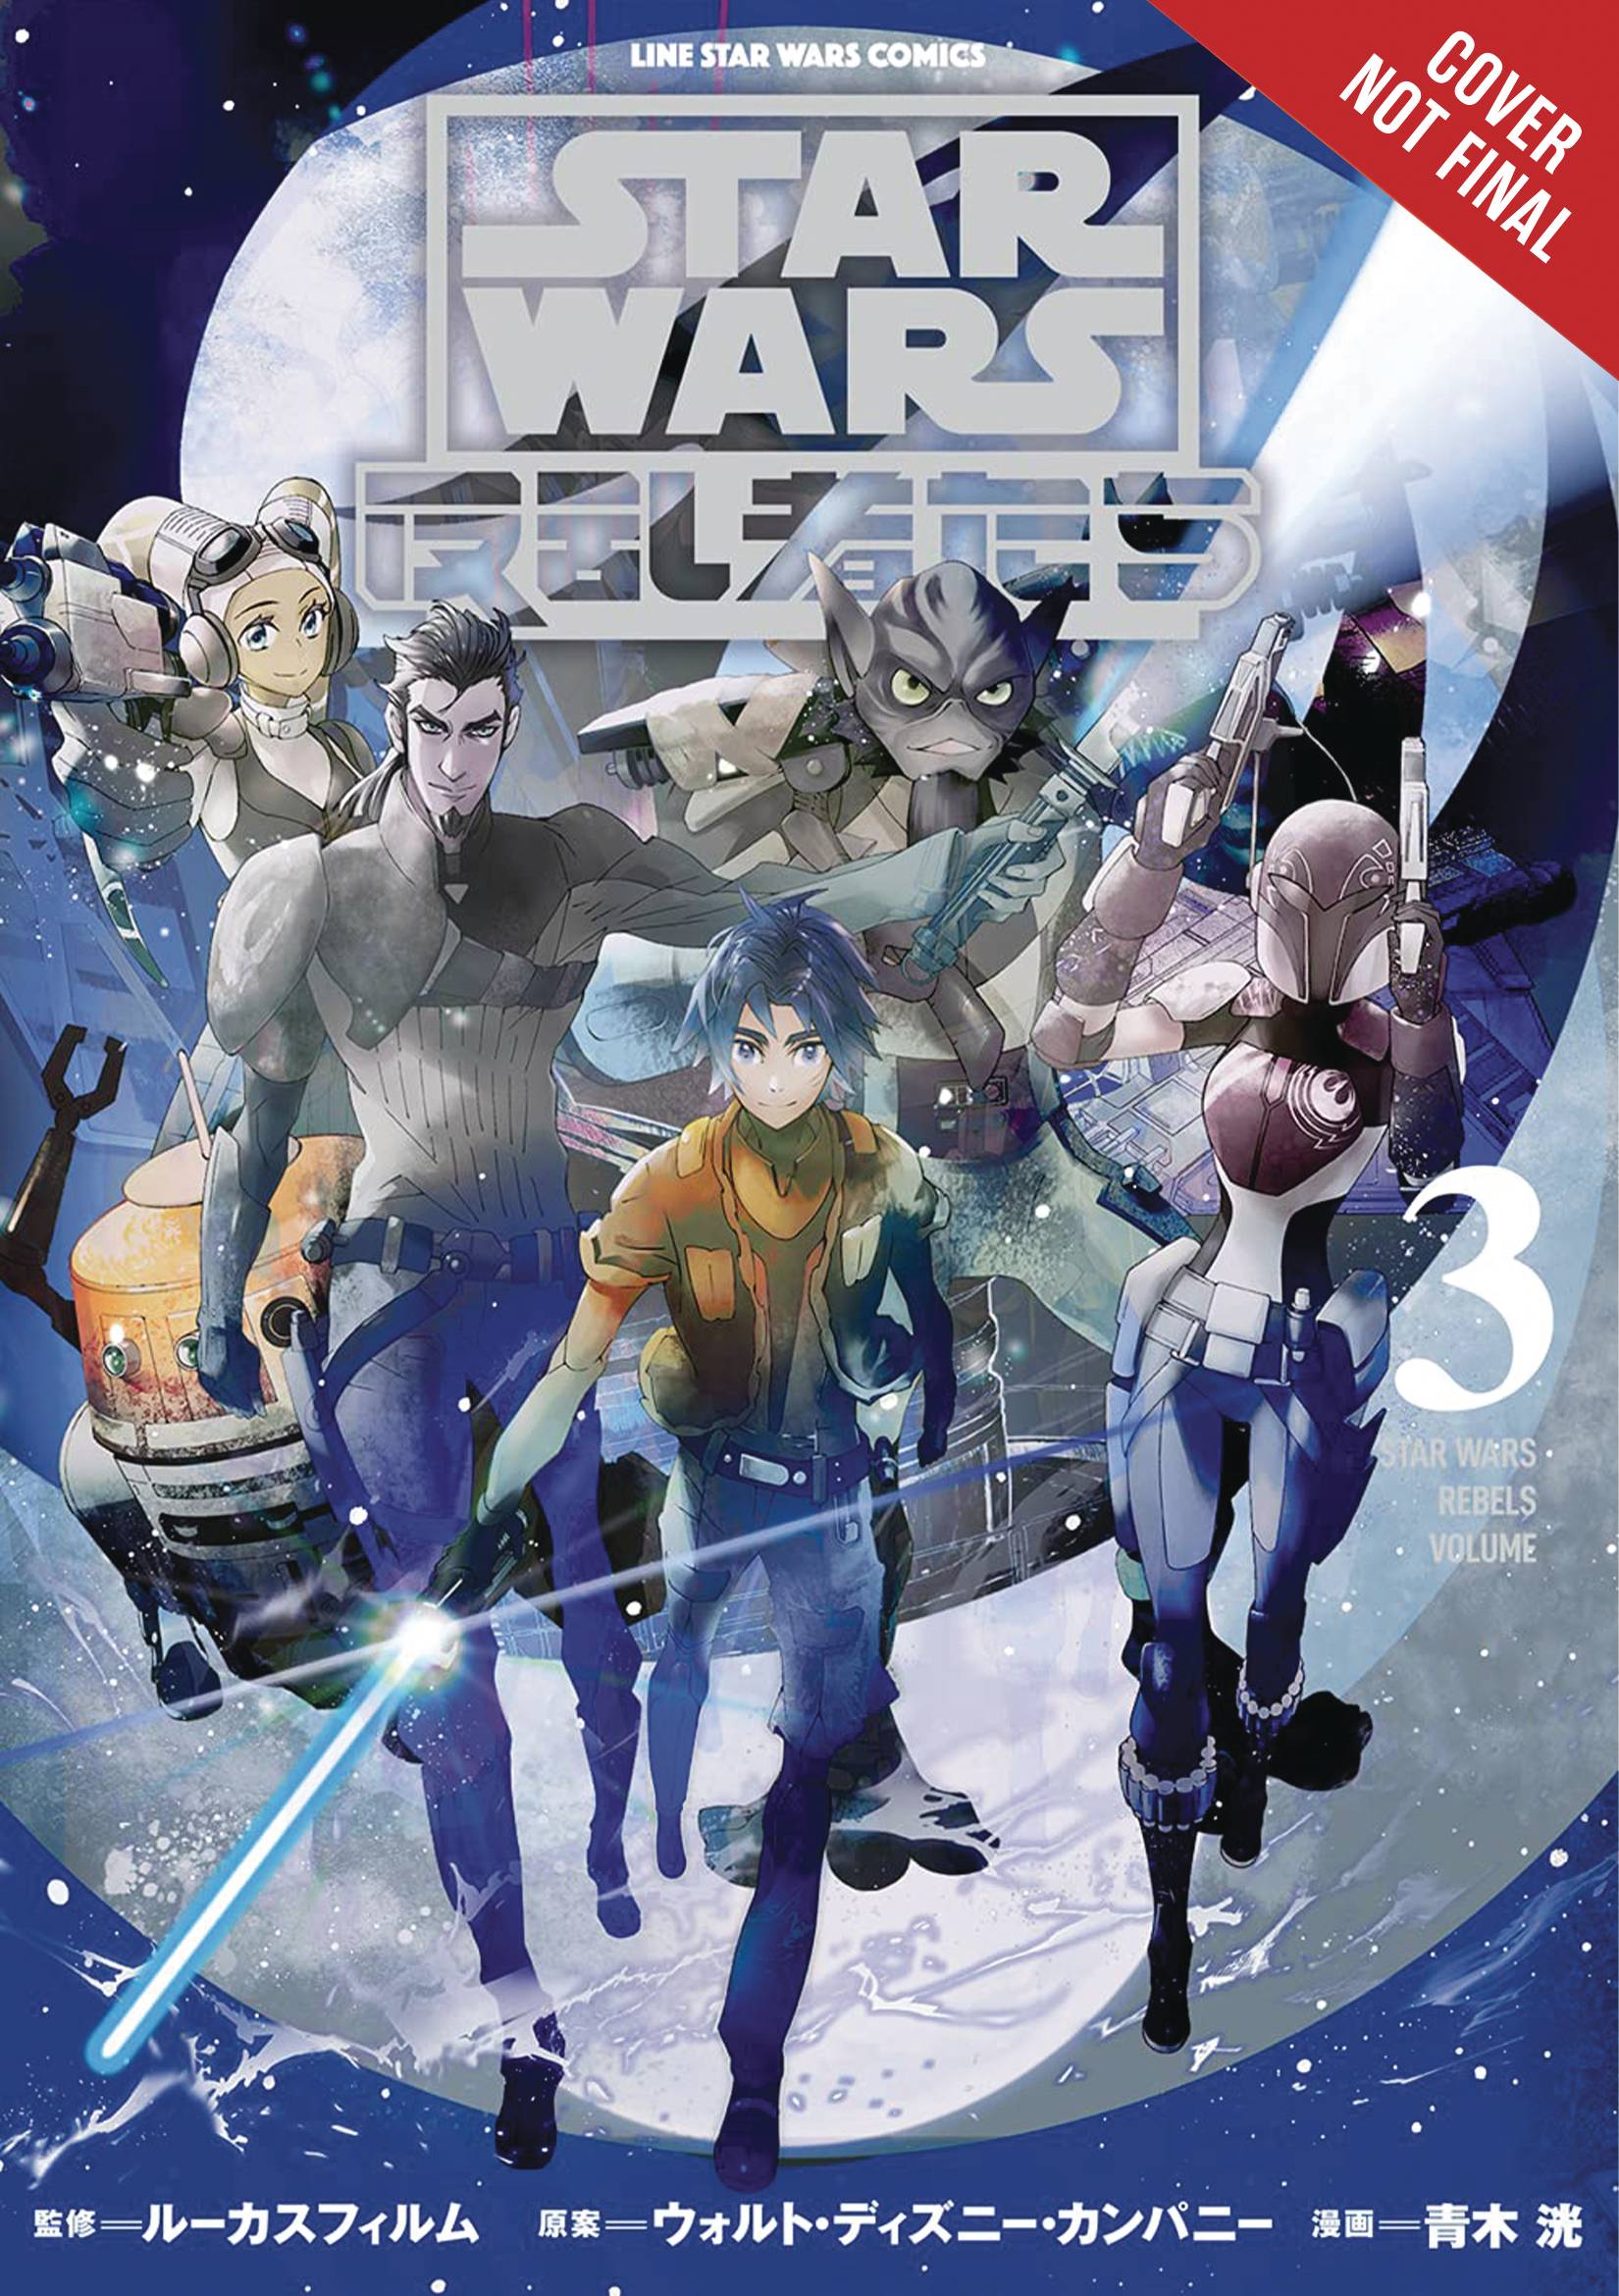 Star Wars Rebels Volume 3 GN